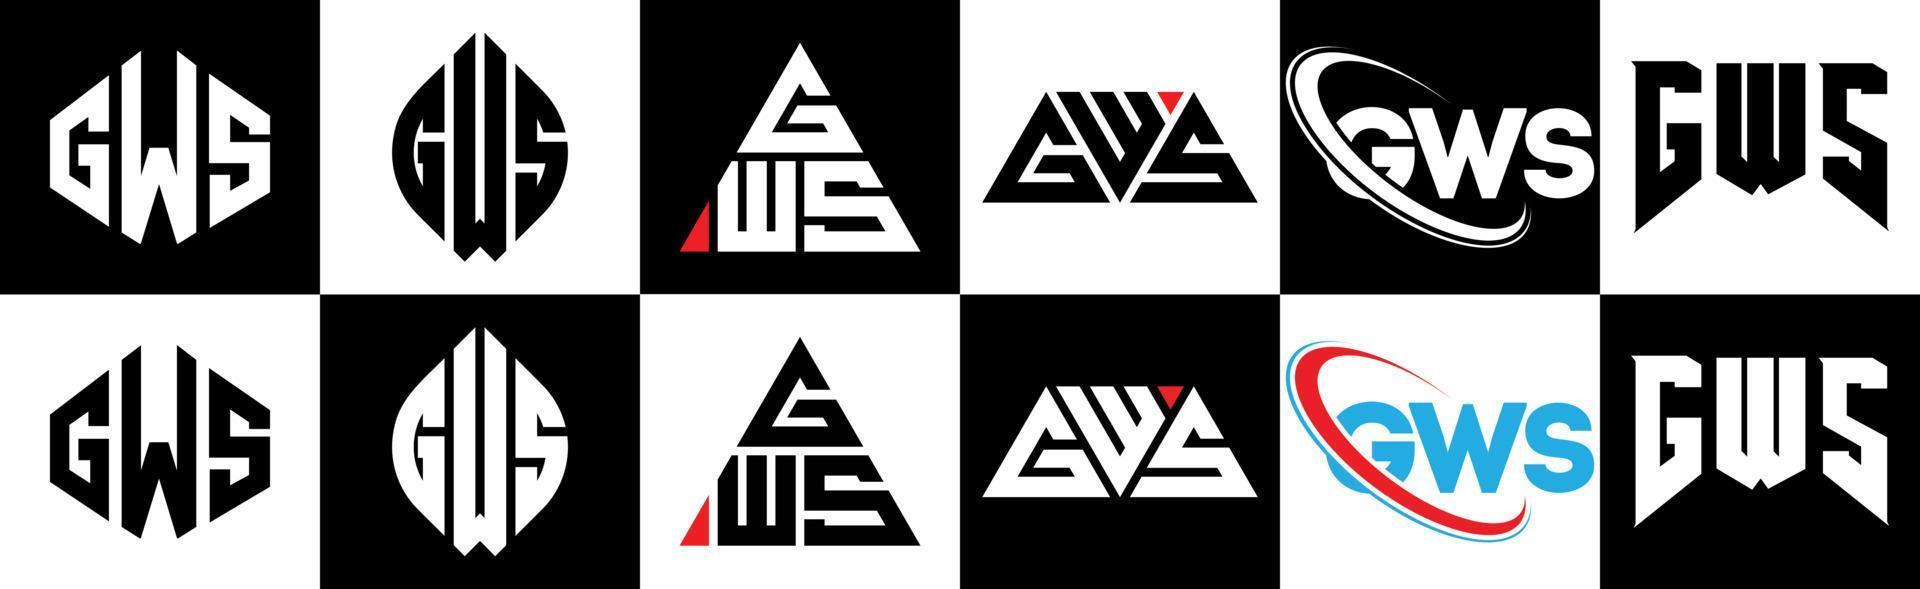 création de logo de lettre gws en six styles. gws polygone, cercle, triangle, hexagone, style plat et simple avec logo de lettre de variation de couleur noir et blanc dans un plan de travail. gws logo minimaliste et classique vecteur